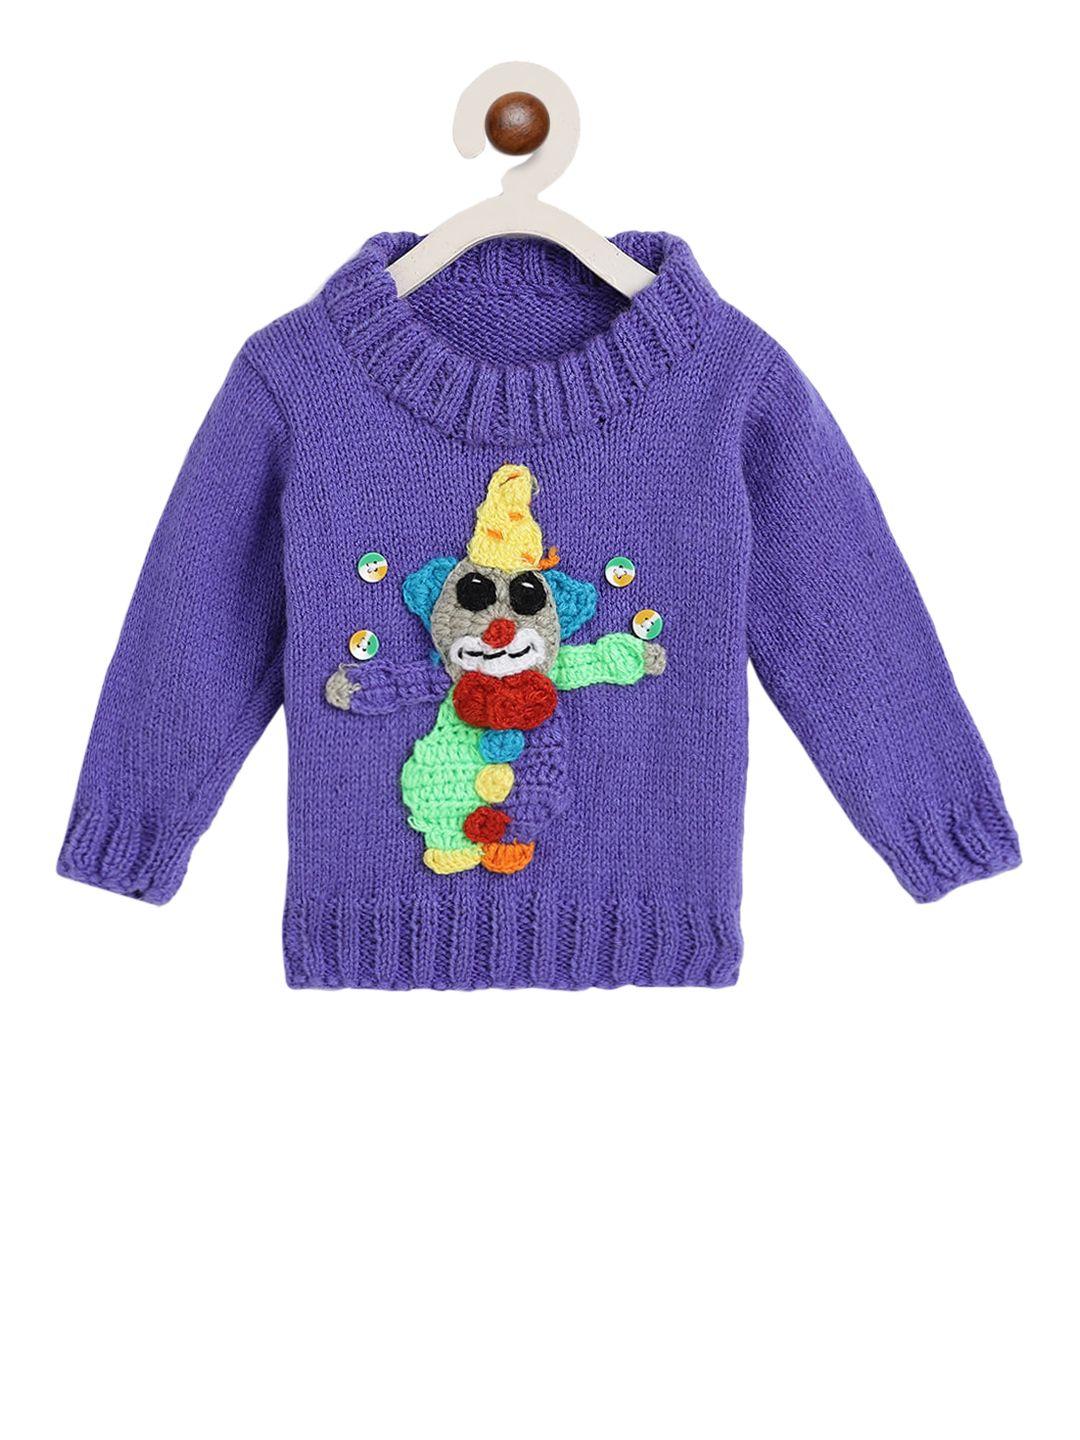 chutput kids blue hand-knitted crochet woolen pullover sweater